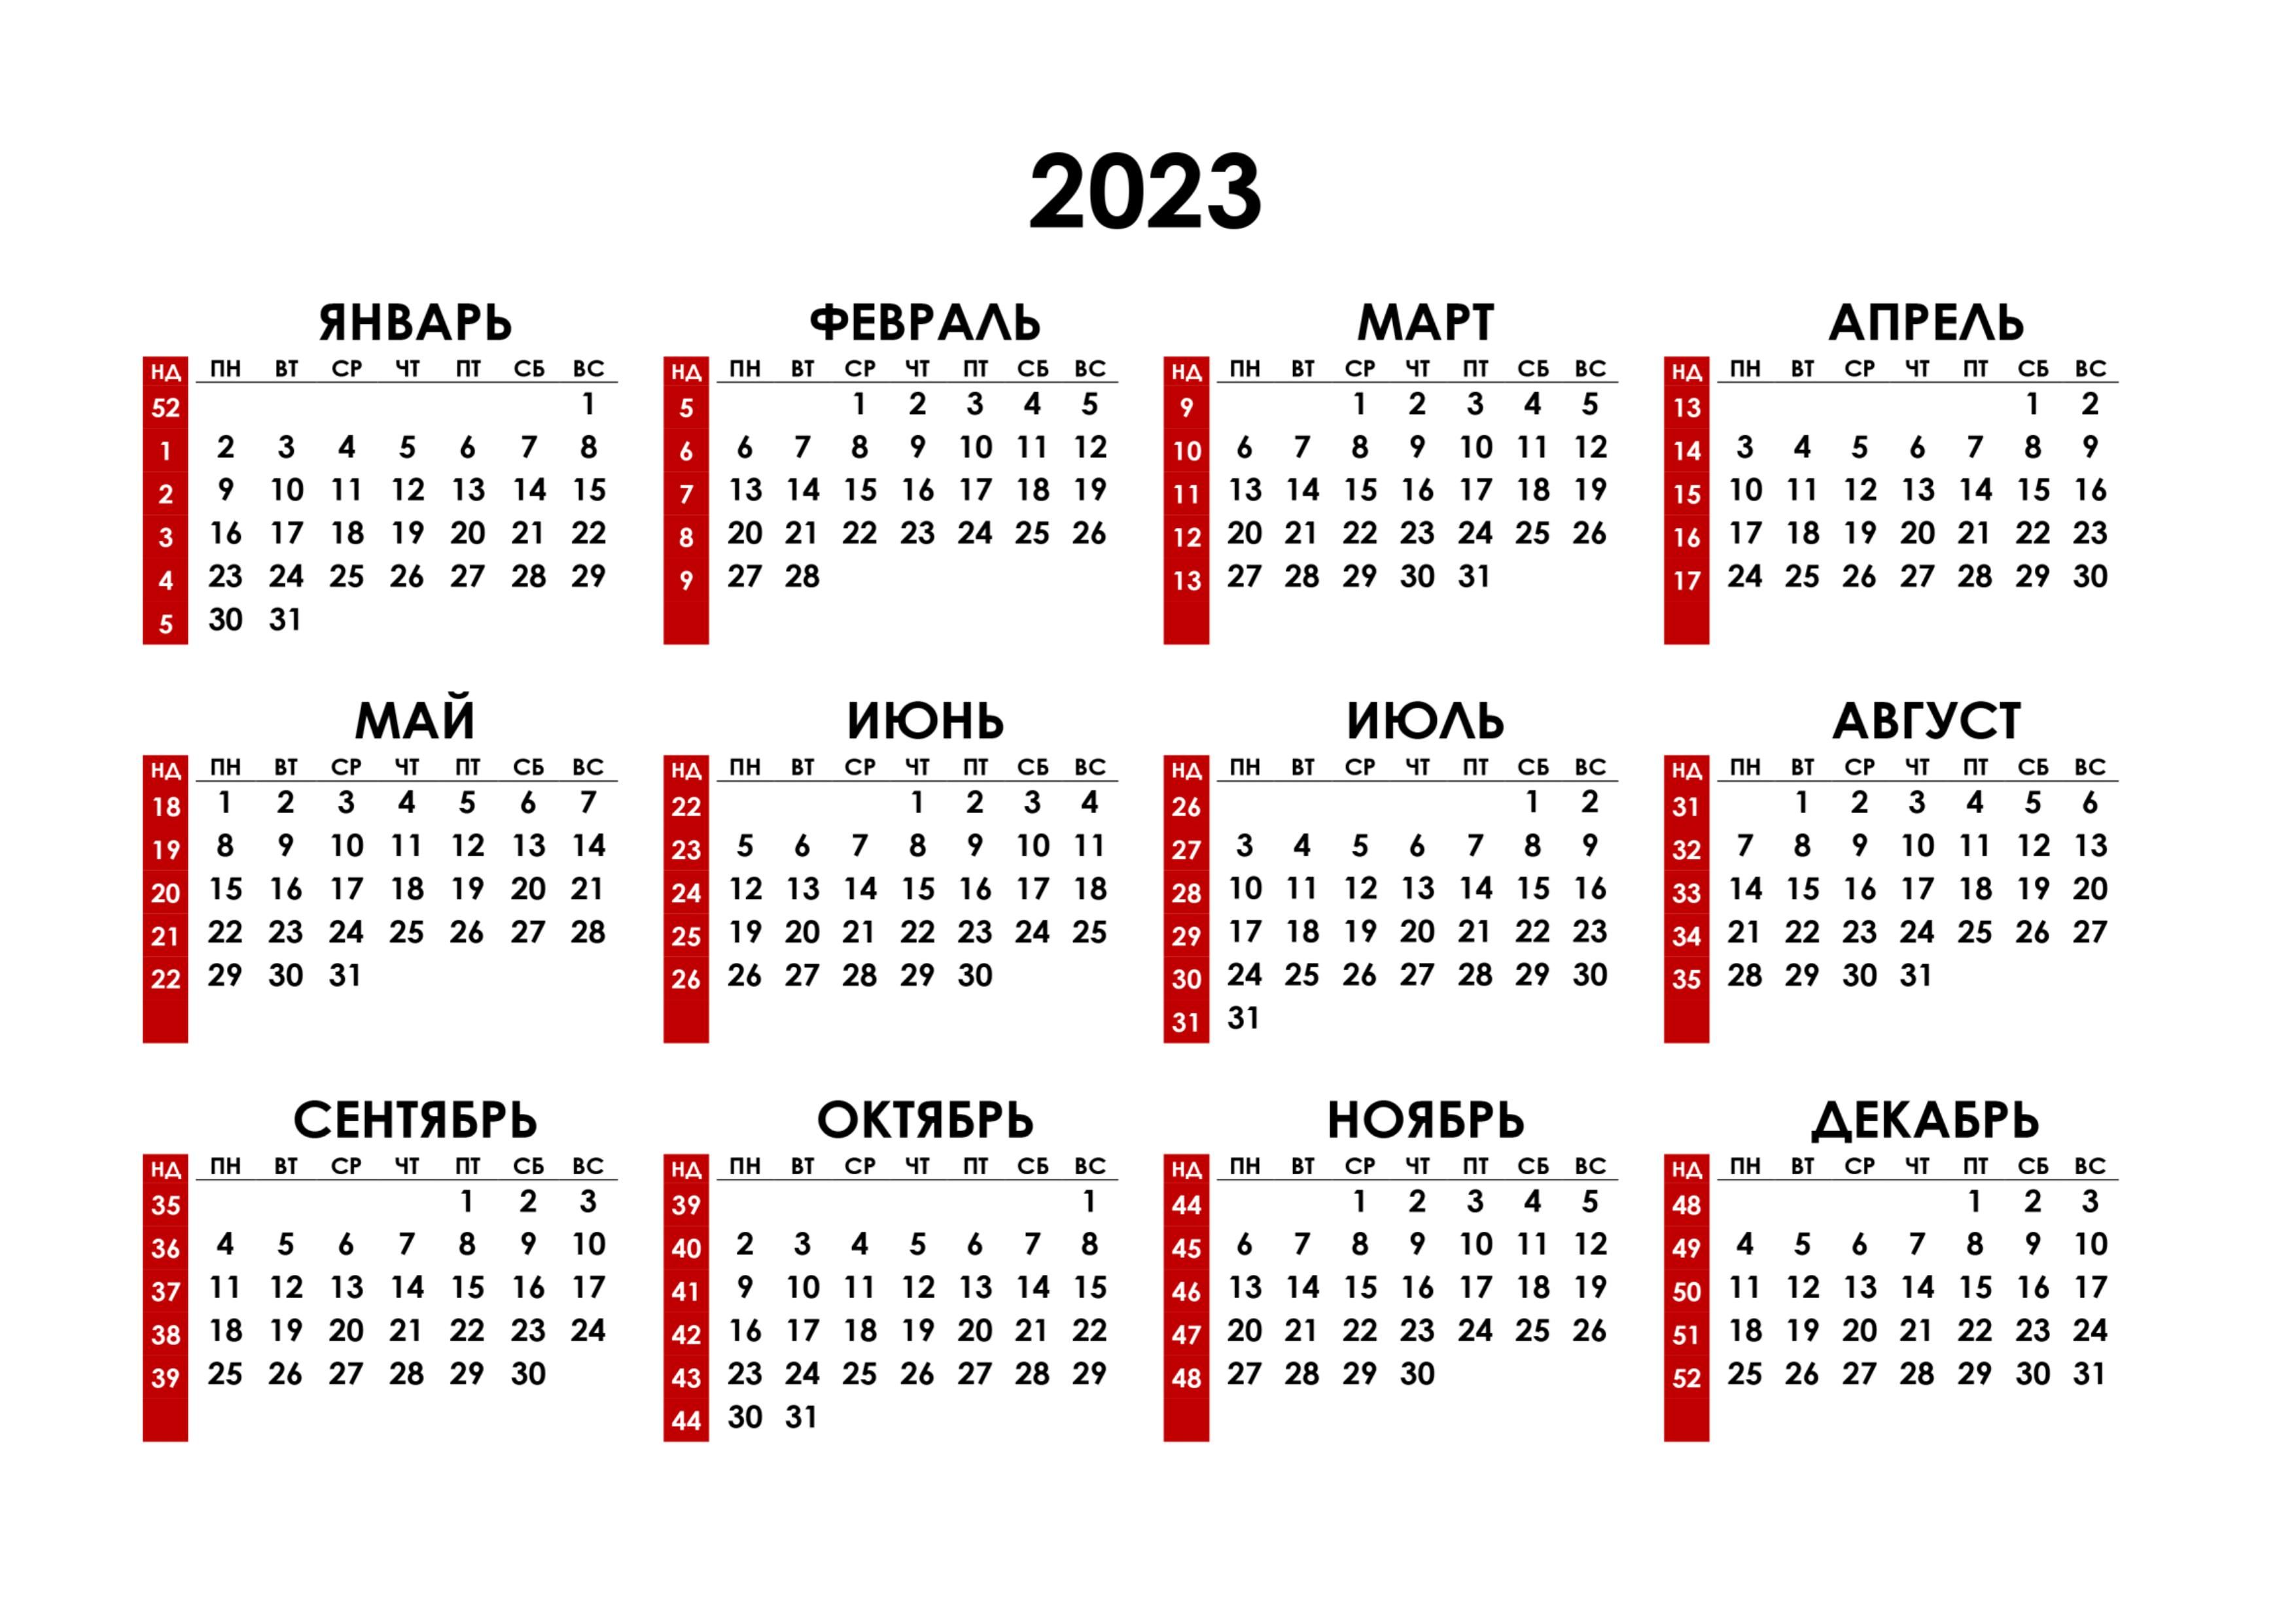 Рабочие дни в 2023 производственный. Календарь на 2023 год. Календарь с номерами недель 2023. Календарь синомерами недель. Hrfktylfhm PF 2023 ujl.